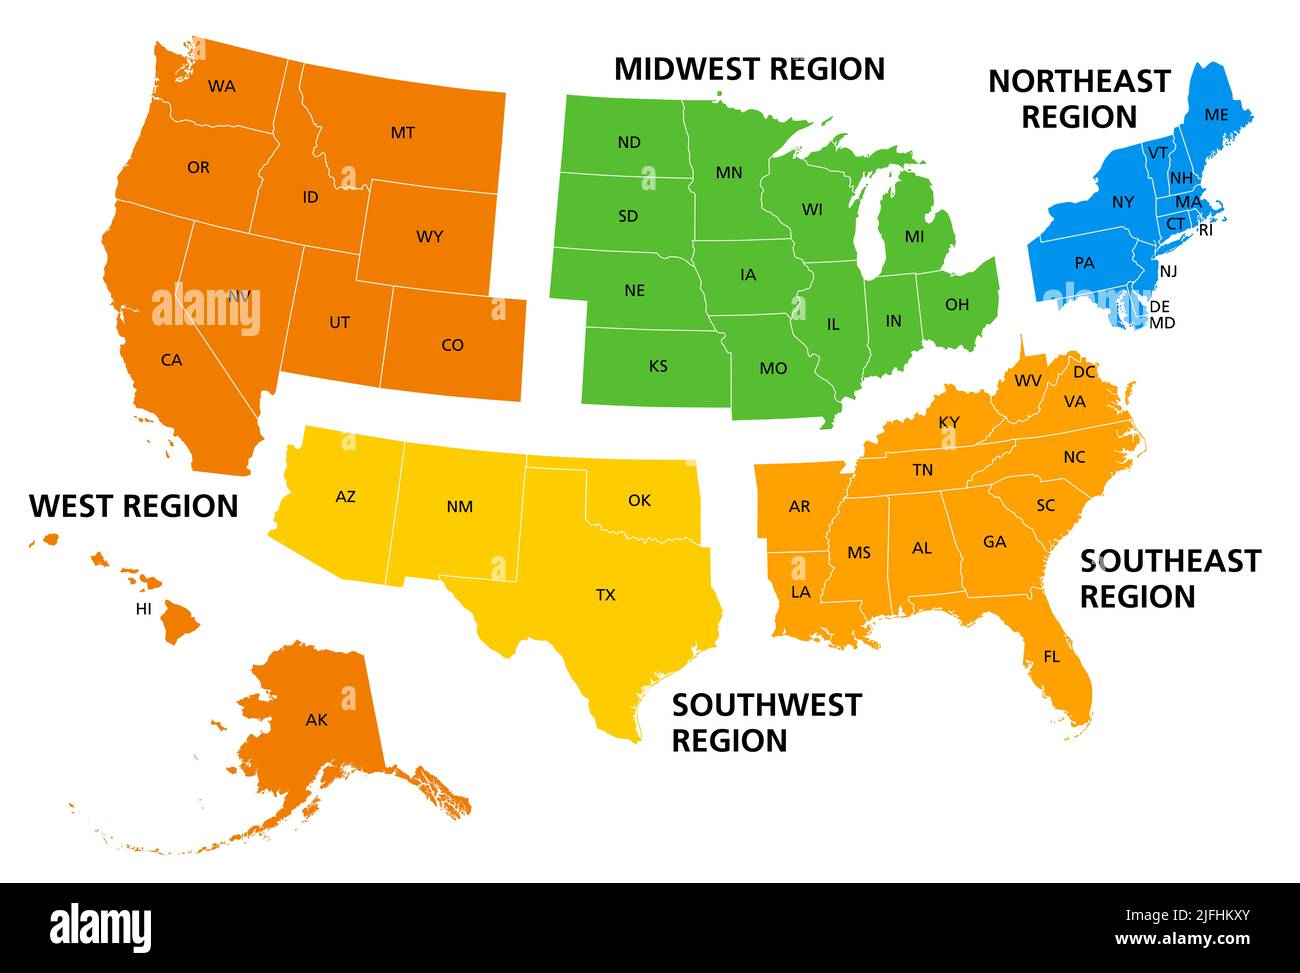 Etats-Unis, régions géographiques, carte politique colorée. Cinq régions, selon leur position géographique sur le continent. Banque D'Images